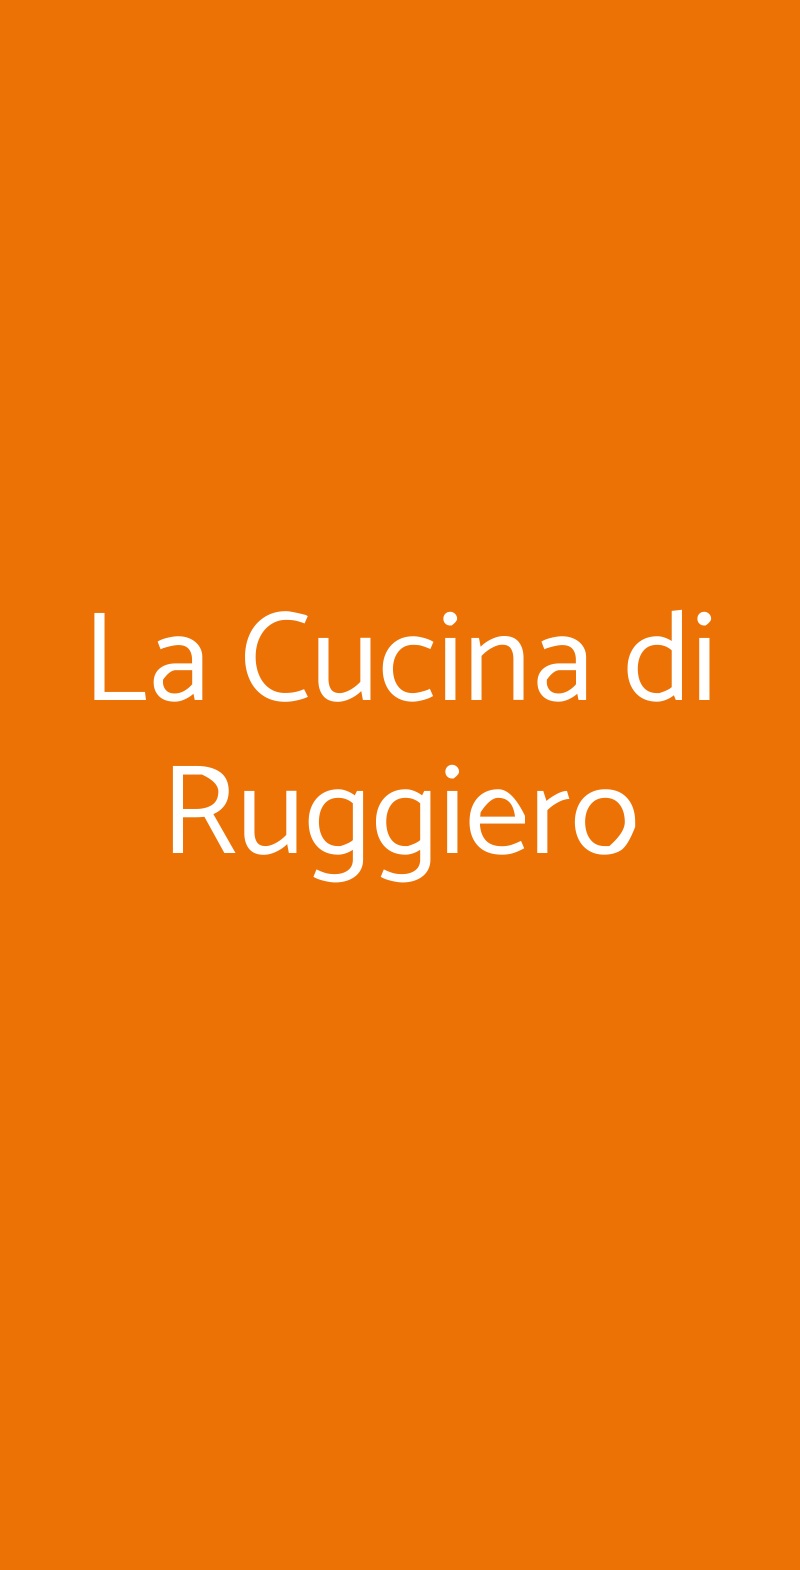 La Cucina di Ruggiero Pozzuoli menù 1 pagina